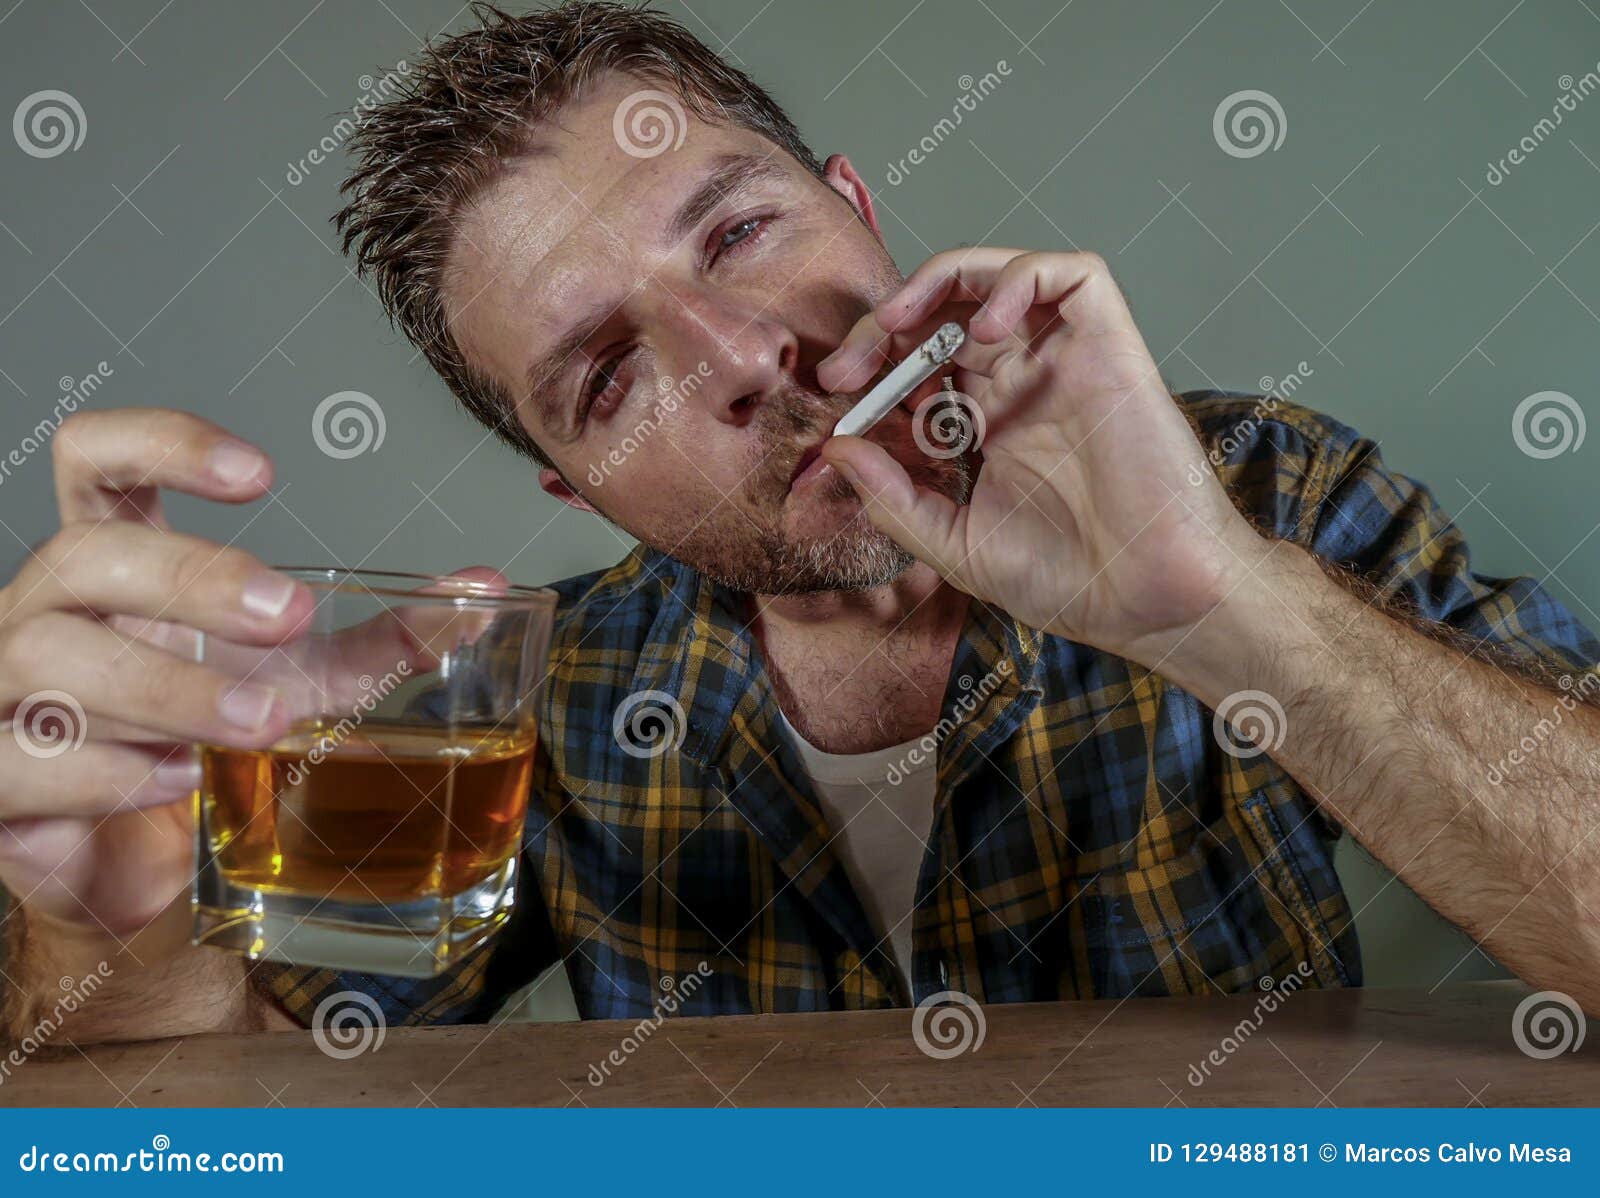 Много курим много пьем. Пить и курить. Мужик пьет и курит.